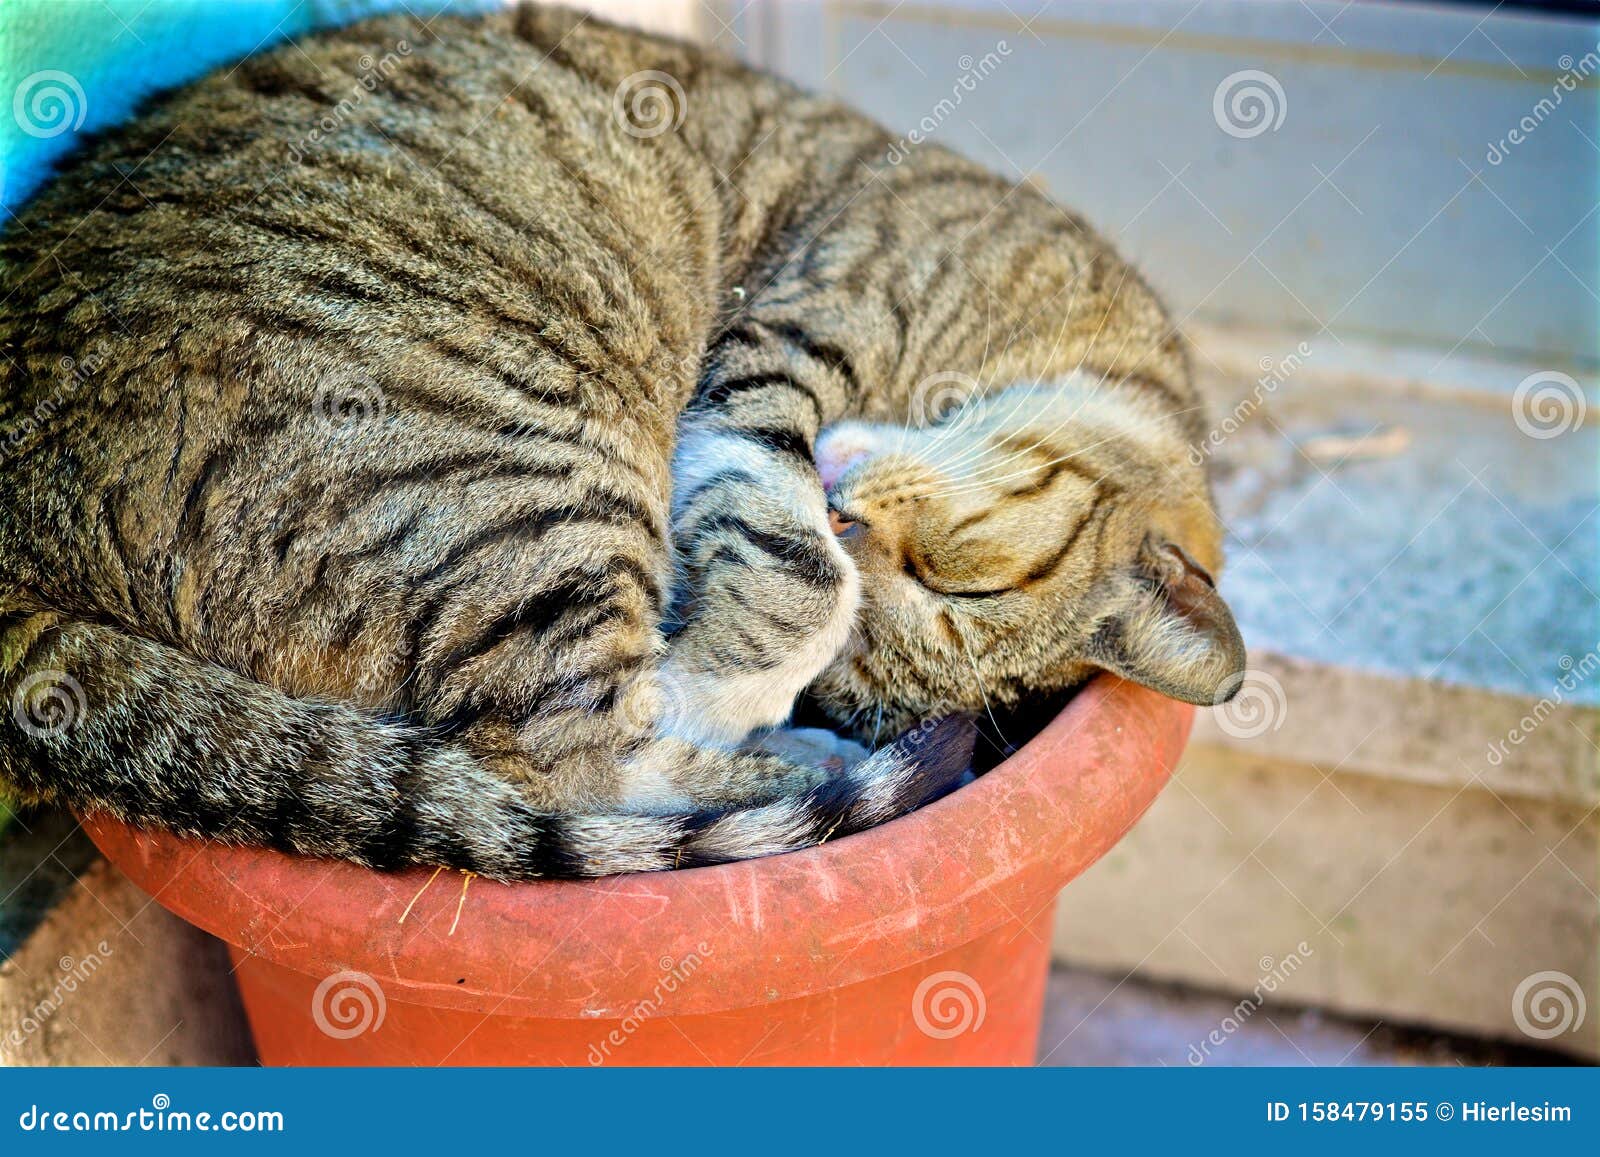 cat sleeping in a pot in lisbon/ chat dormant dans un pot de fleur ÃÂ  lisbonne